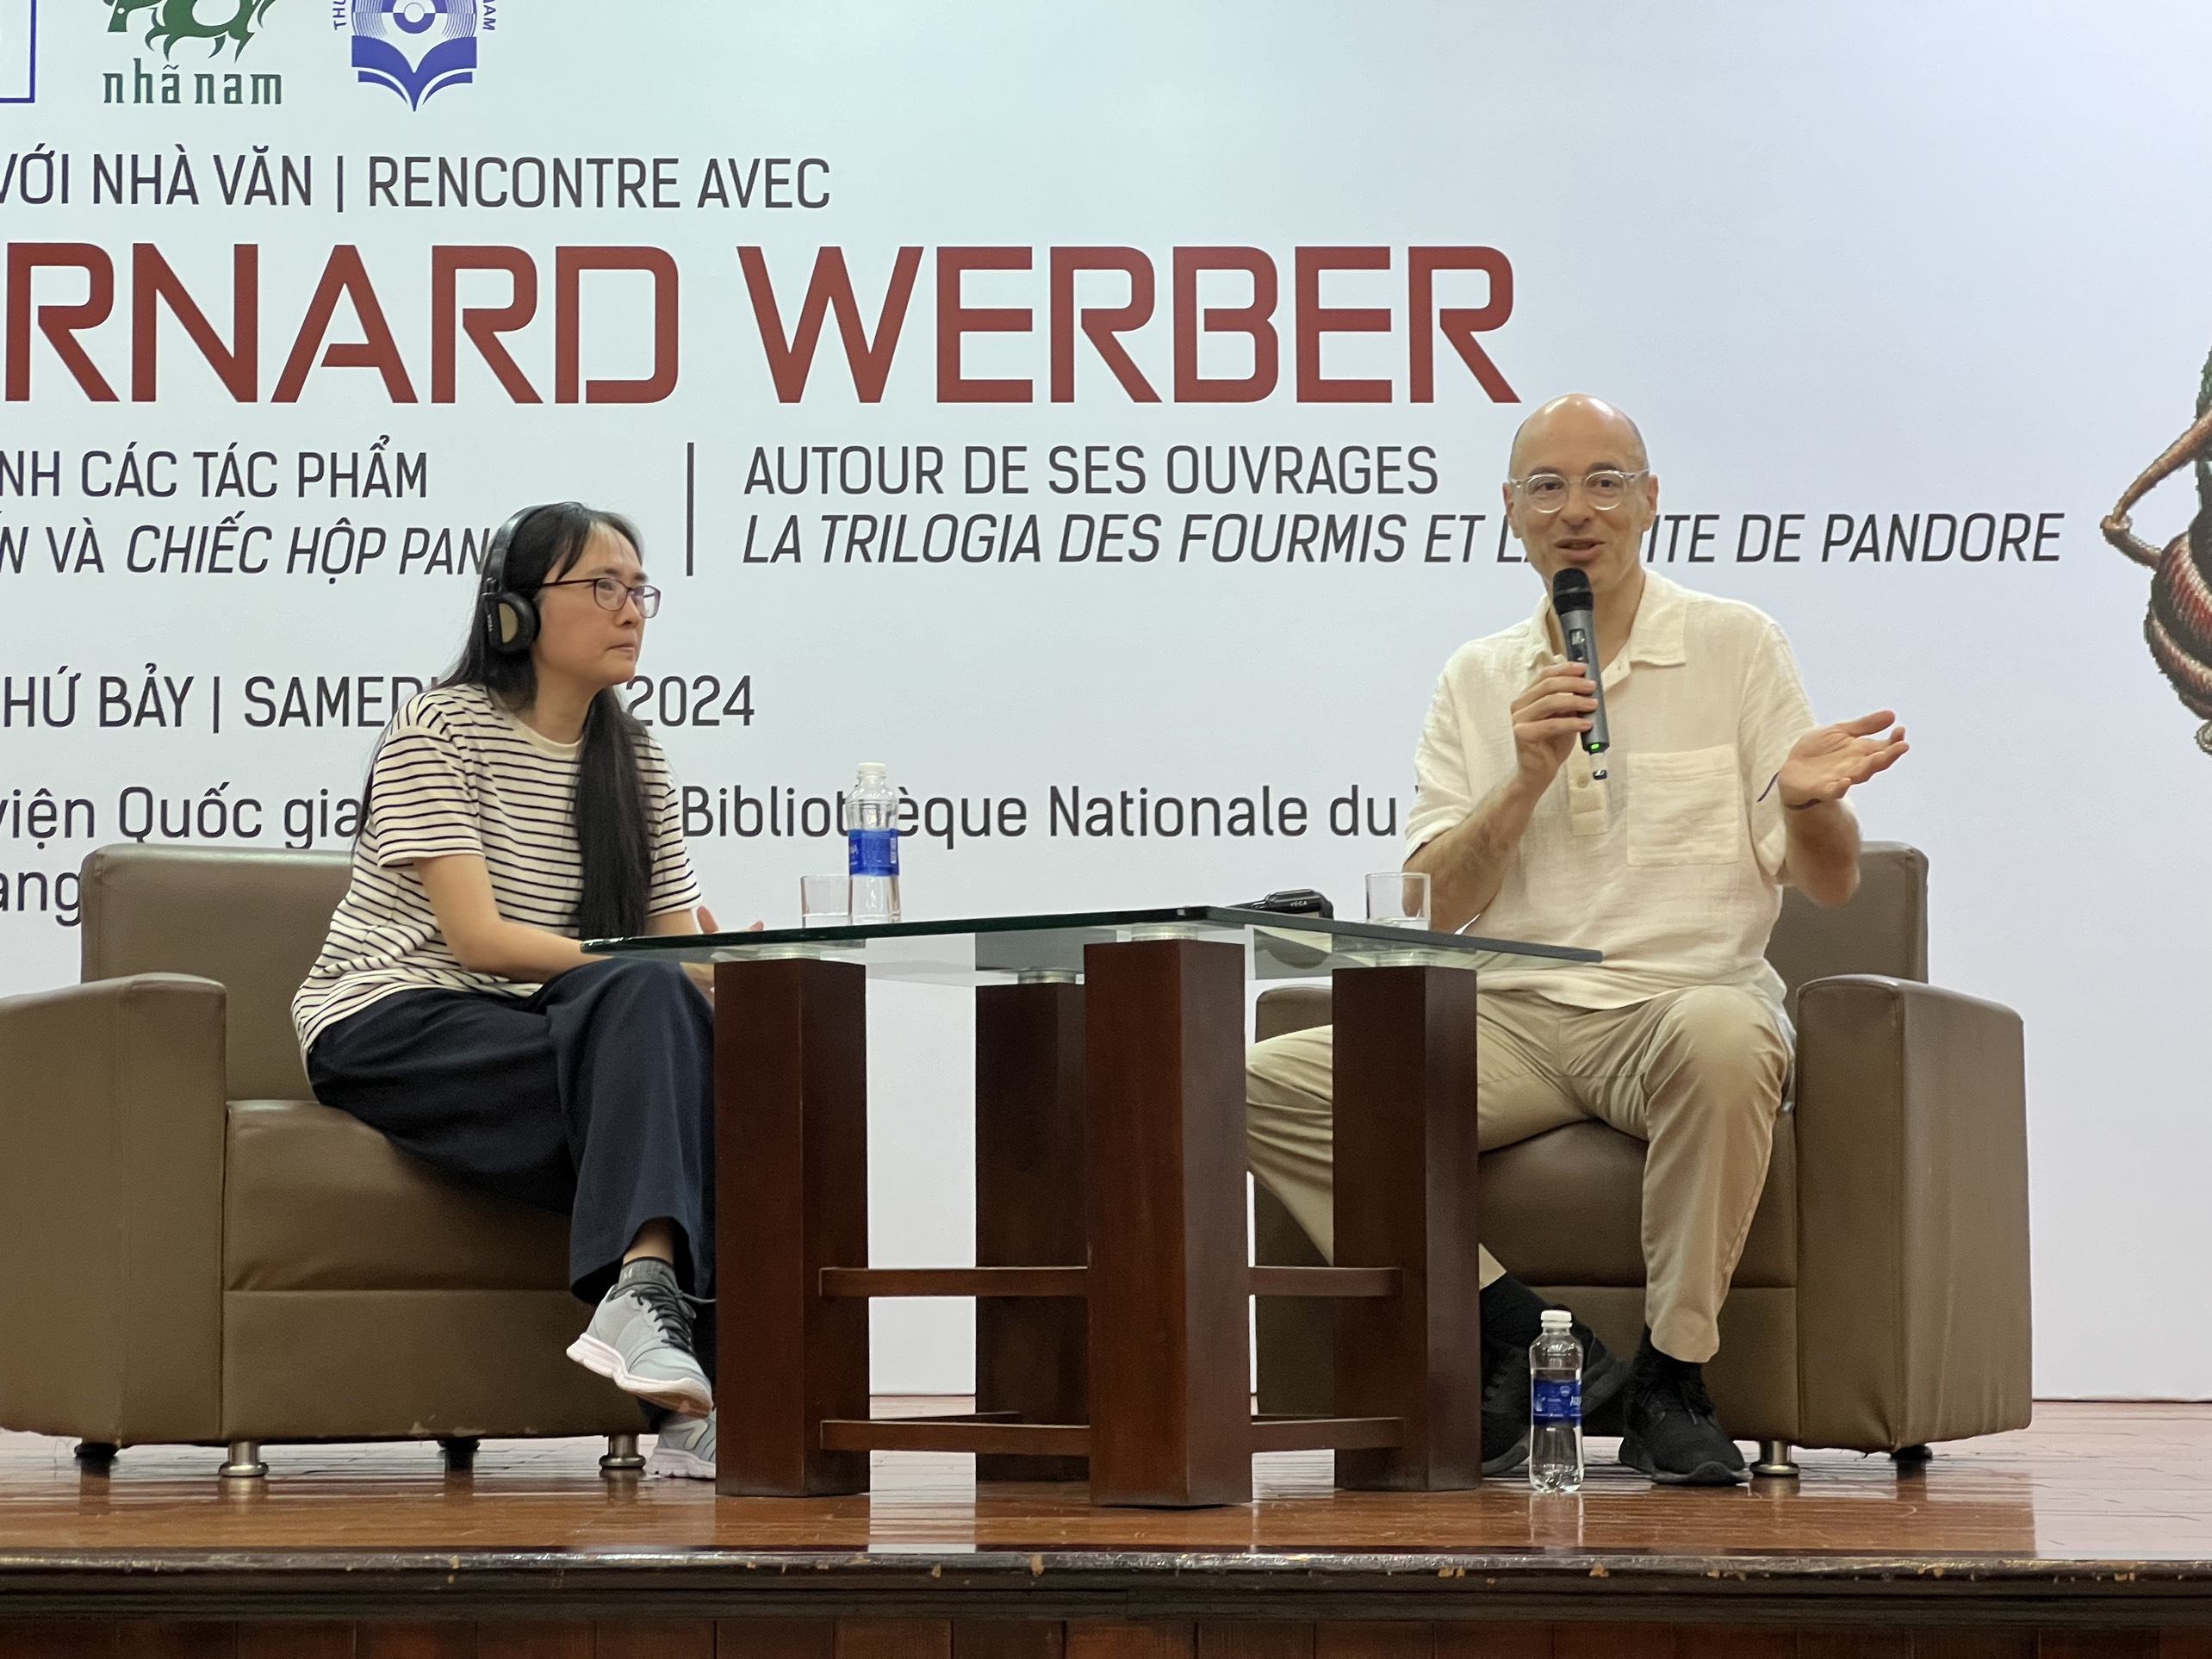 Bernard Werber: Nhà văn mở rộng góc nhìn của độc giả lên 360 độ - 3